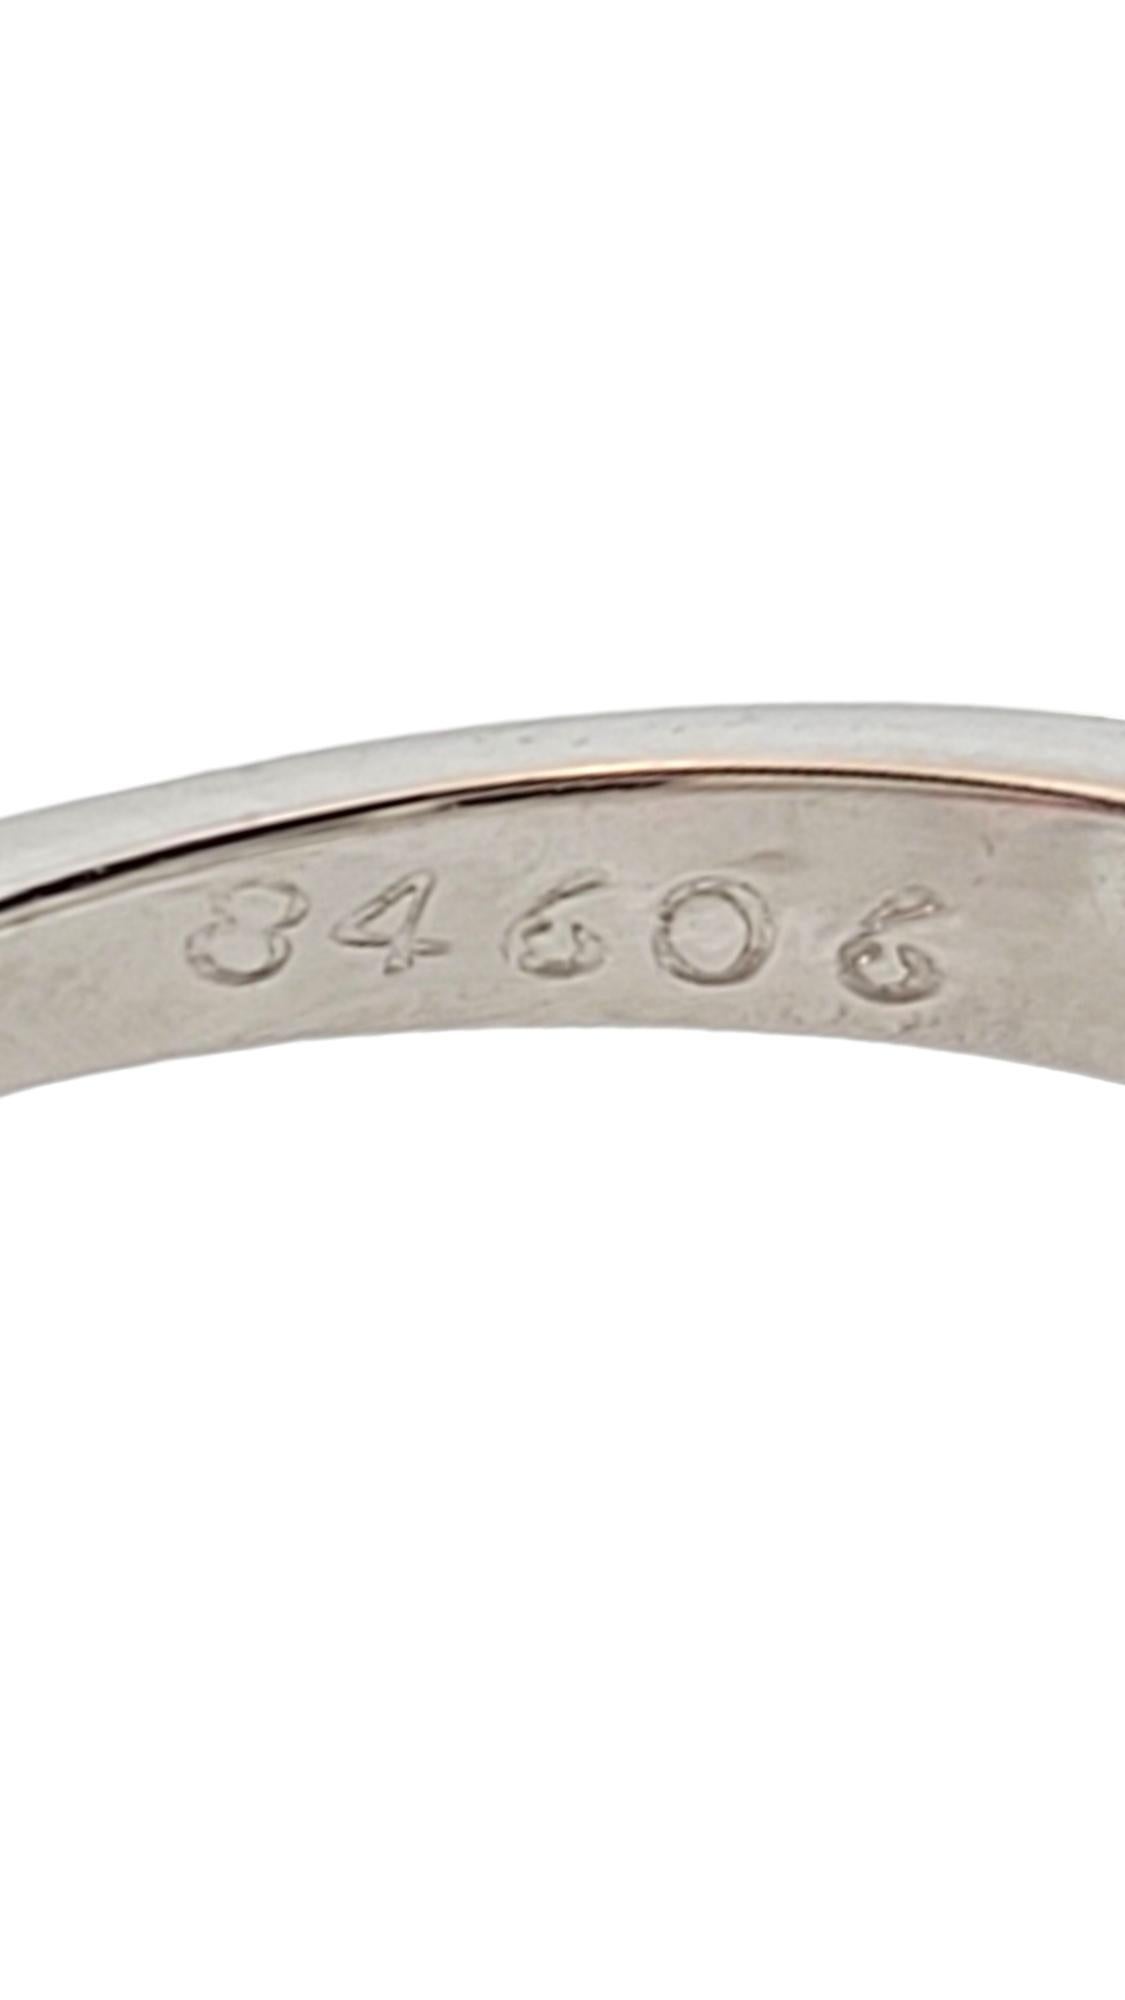 14K White Gold Opal Diamond Ring Size 7.25 #16172 1